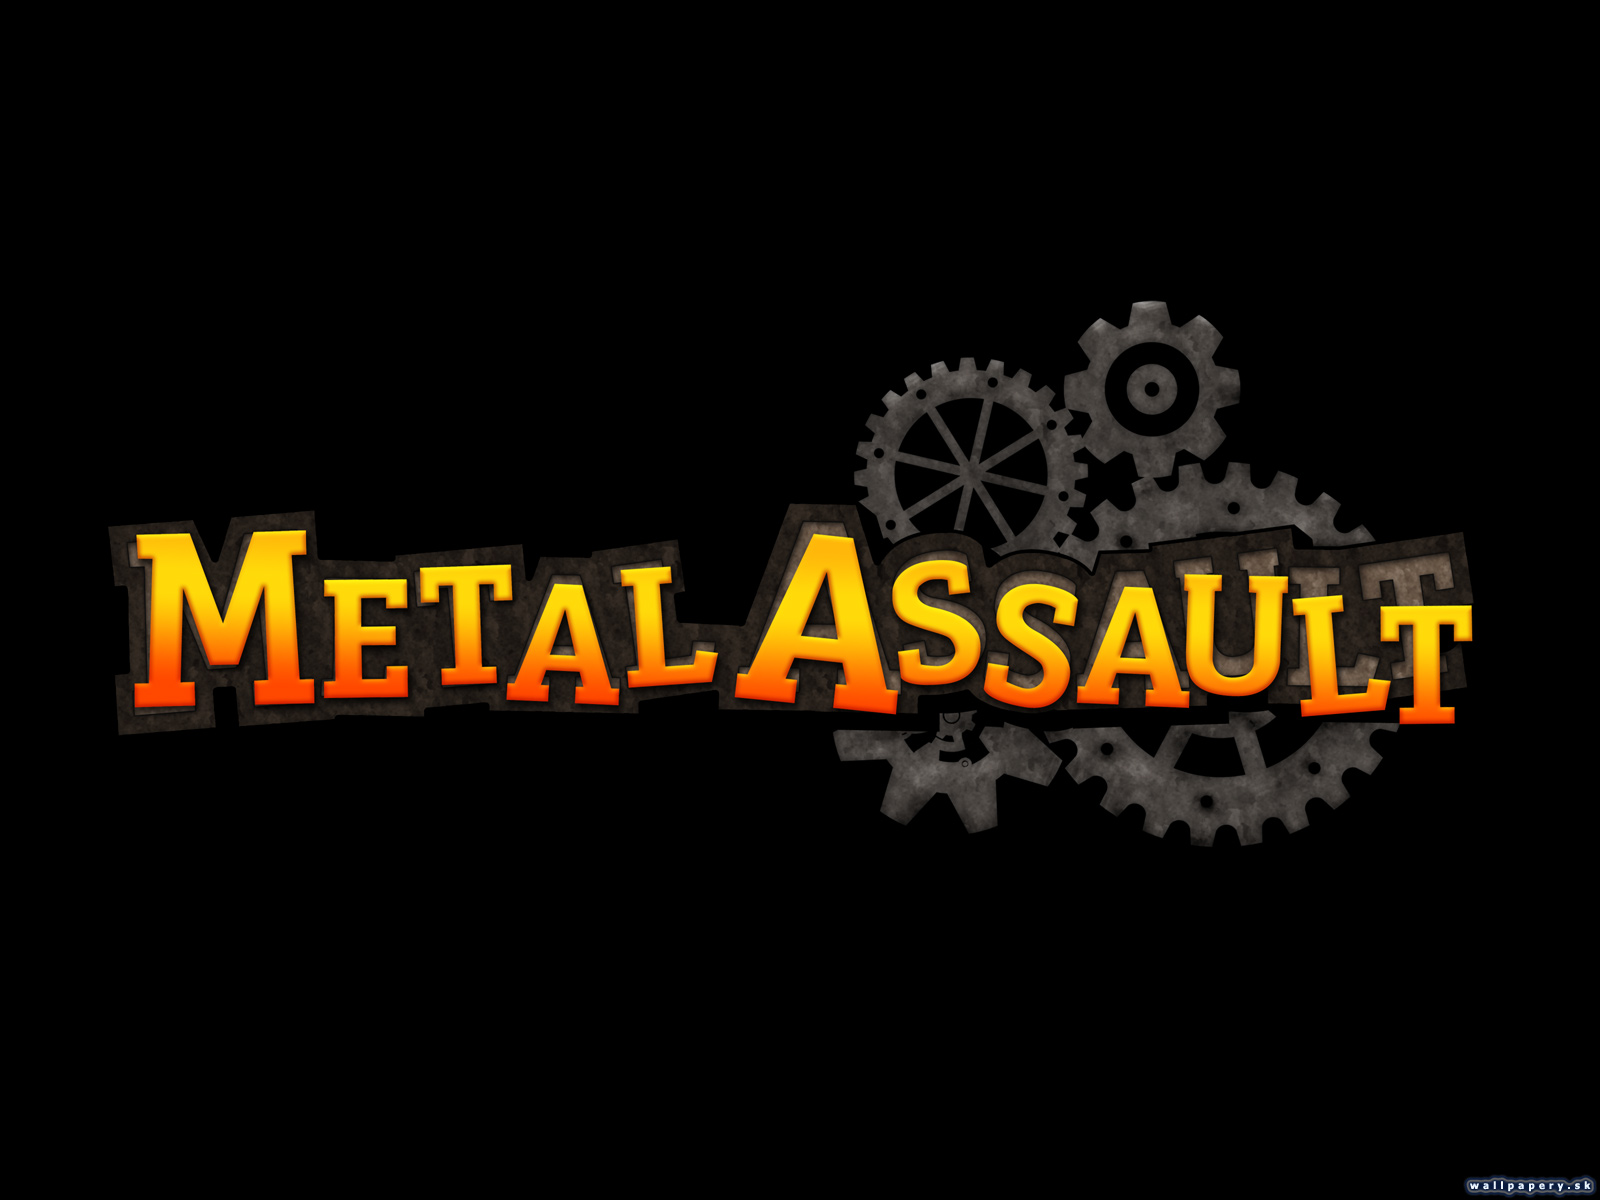 Metal Assault - wallpaper 16